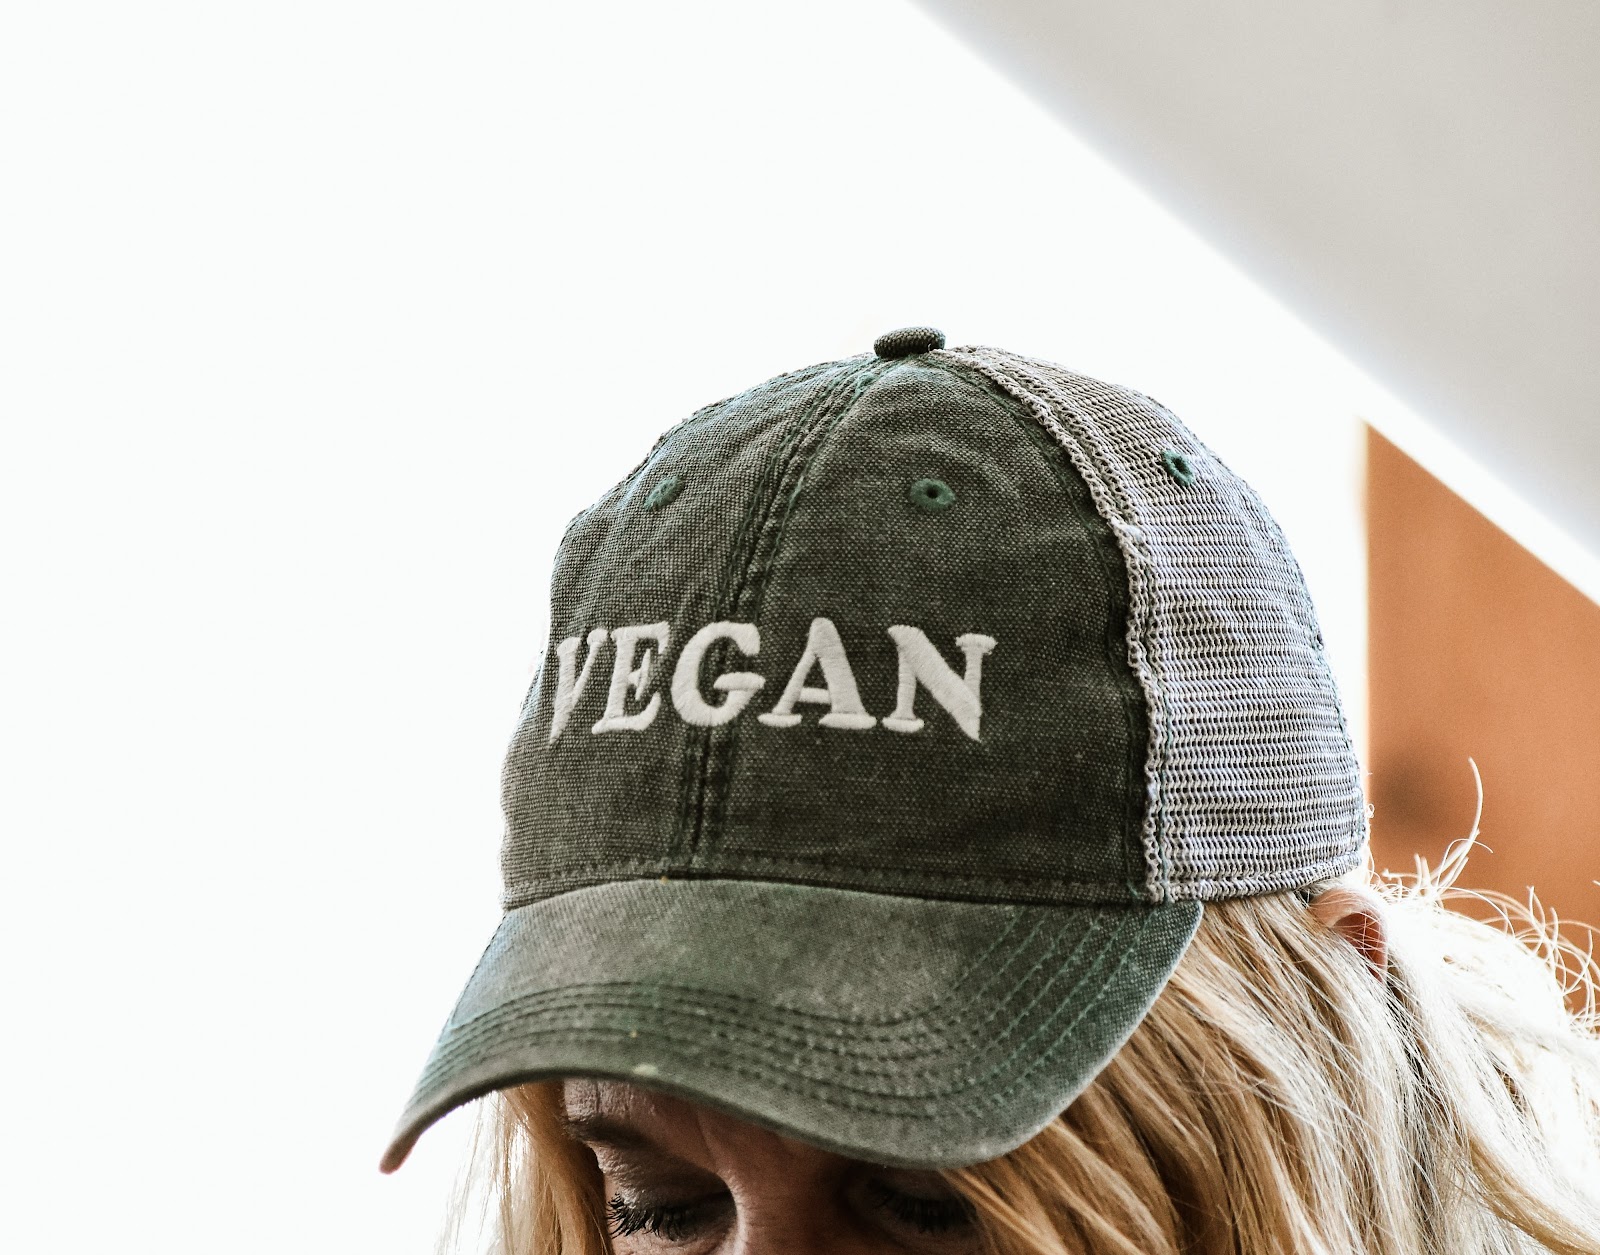 Vegan hat